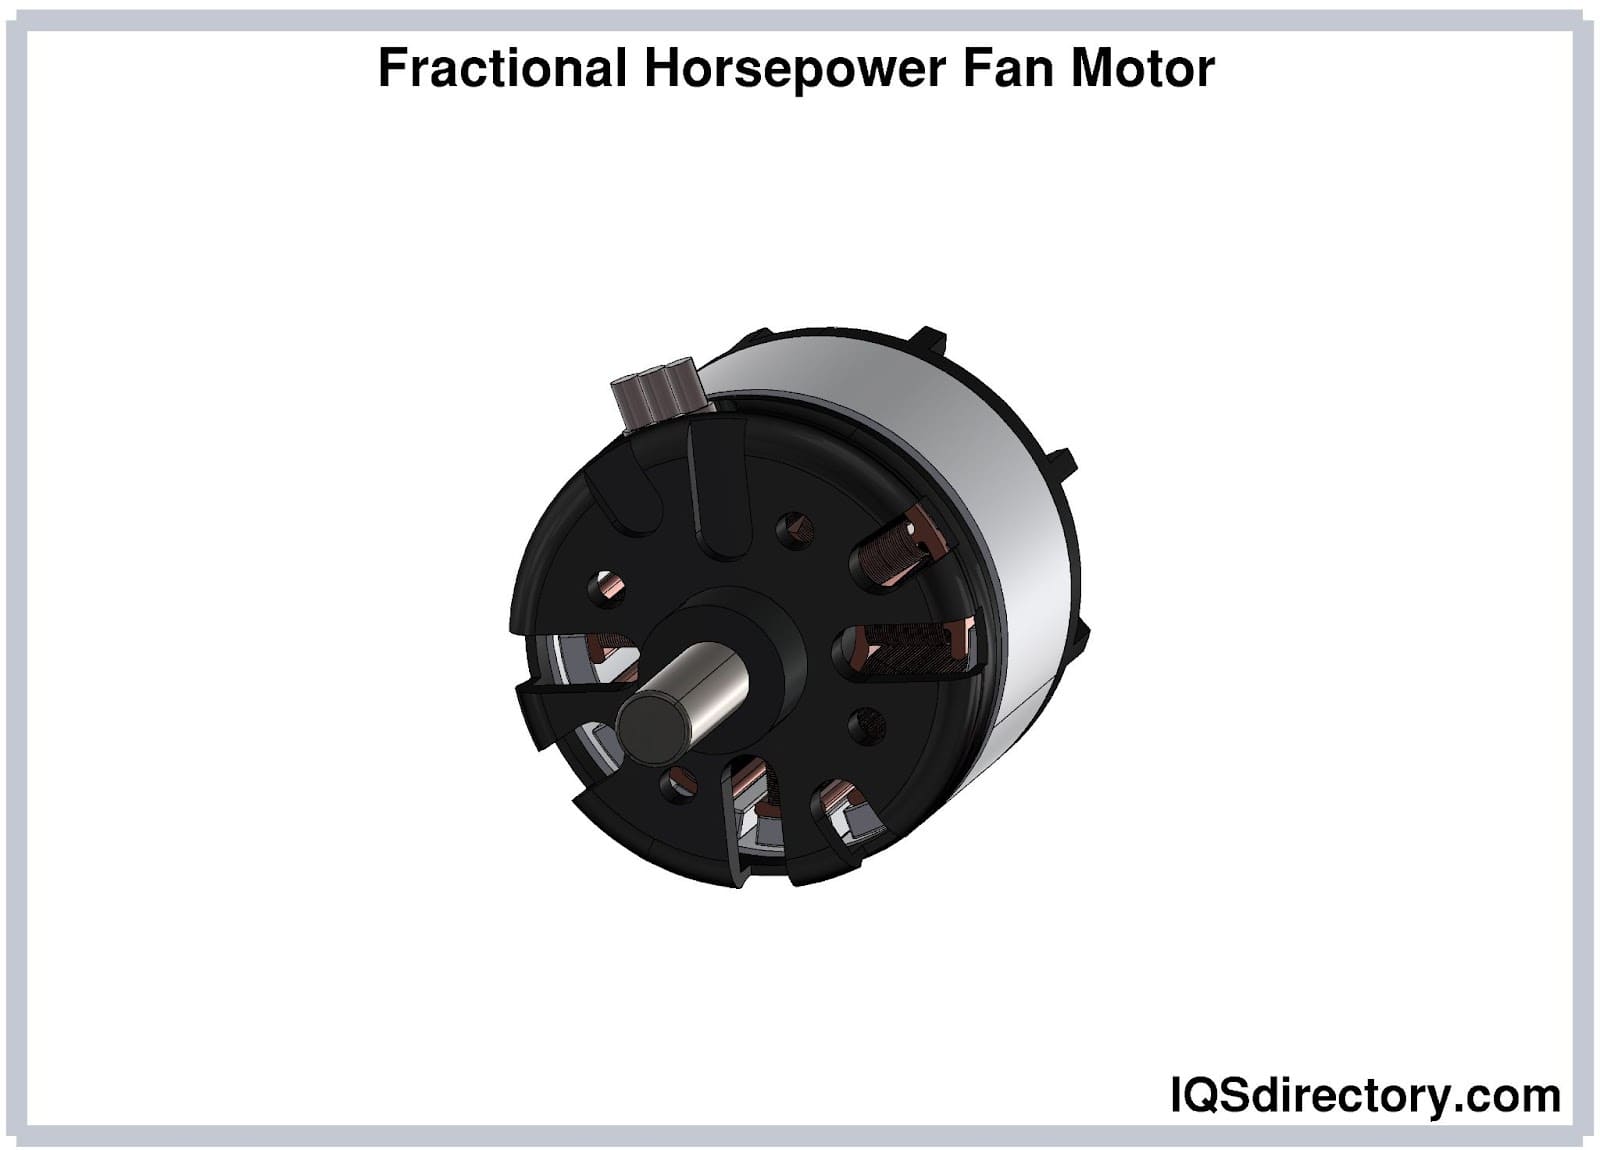 Fractional Horsepower Fan Motor